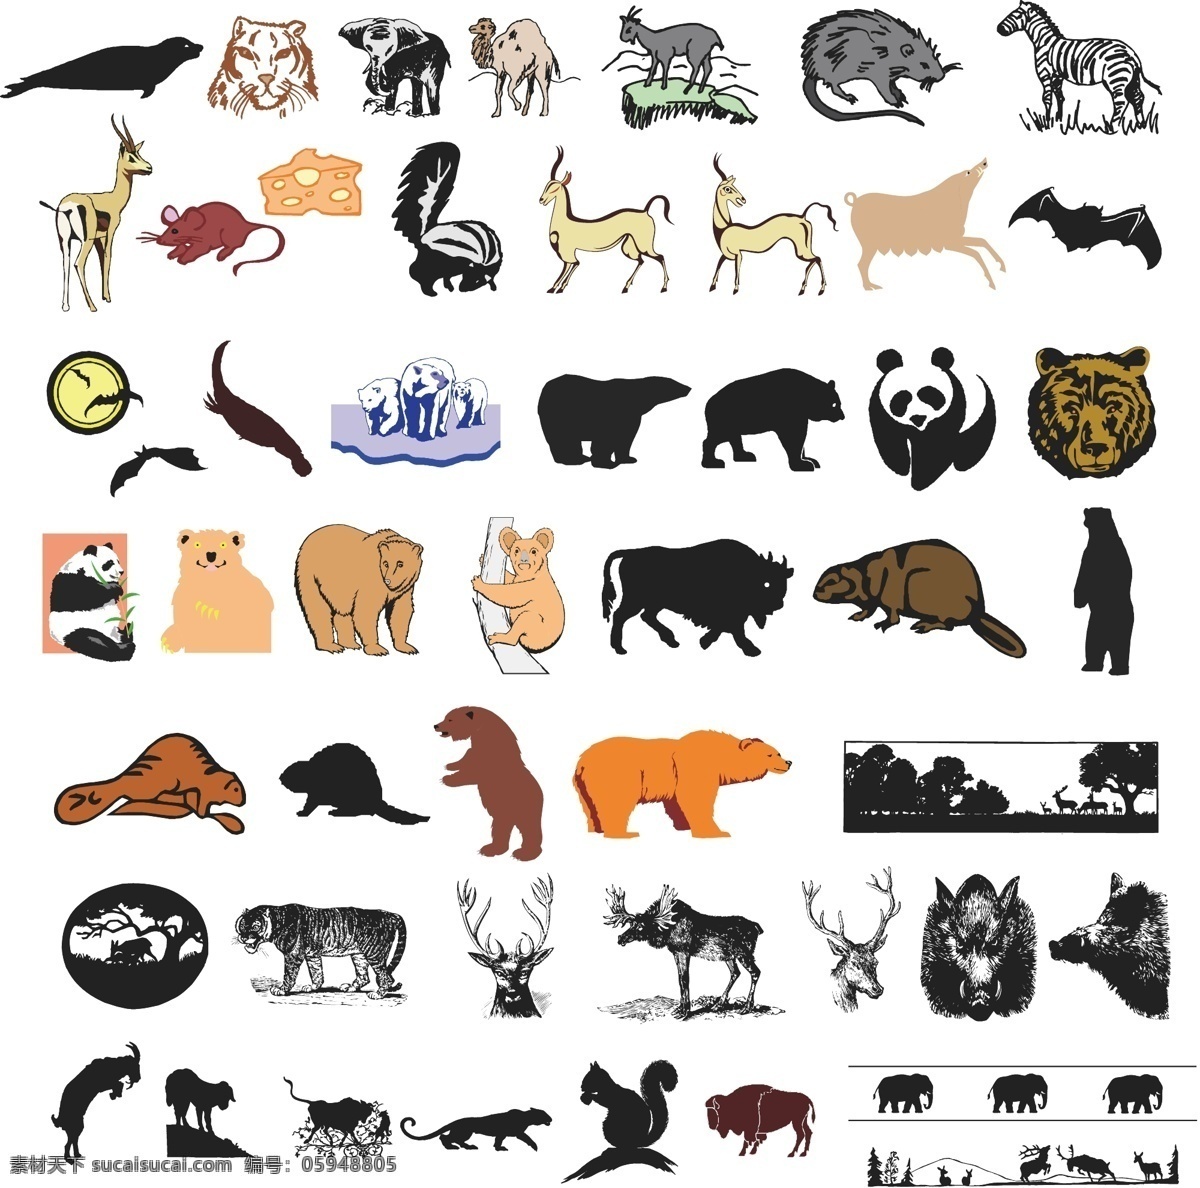 北极熊 标牌 标识 标志 动物 剪影 老虎 麋鹿 欧式 熊猫 狗熊 森林 矢量 模板下载 松鼠 图标 动物图形元素 野生动物 生物世界 矢量图 其他矢量图